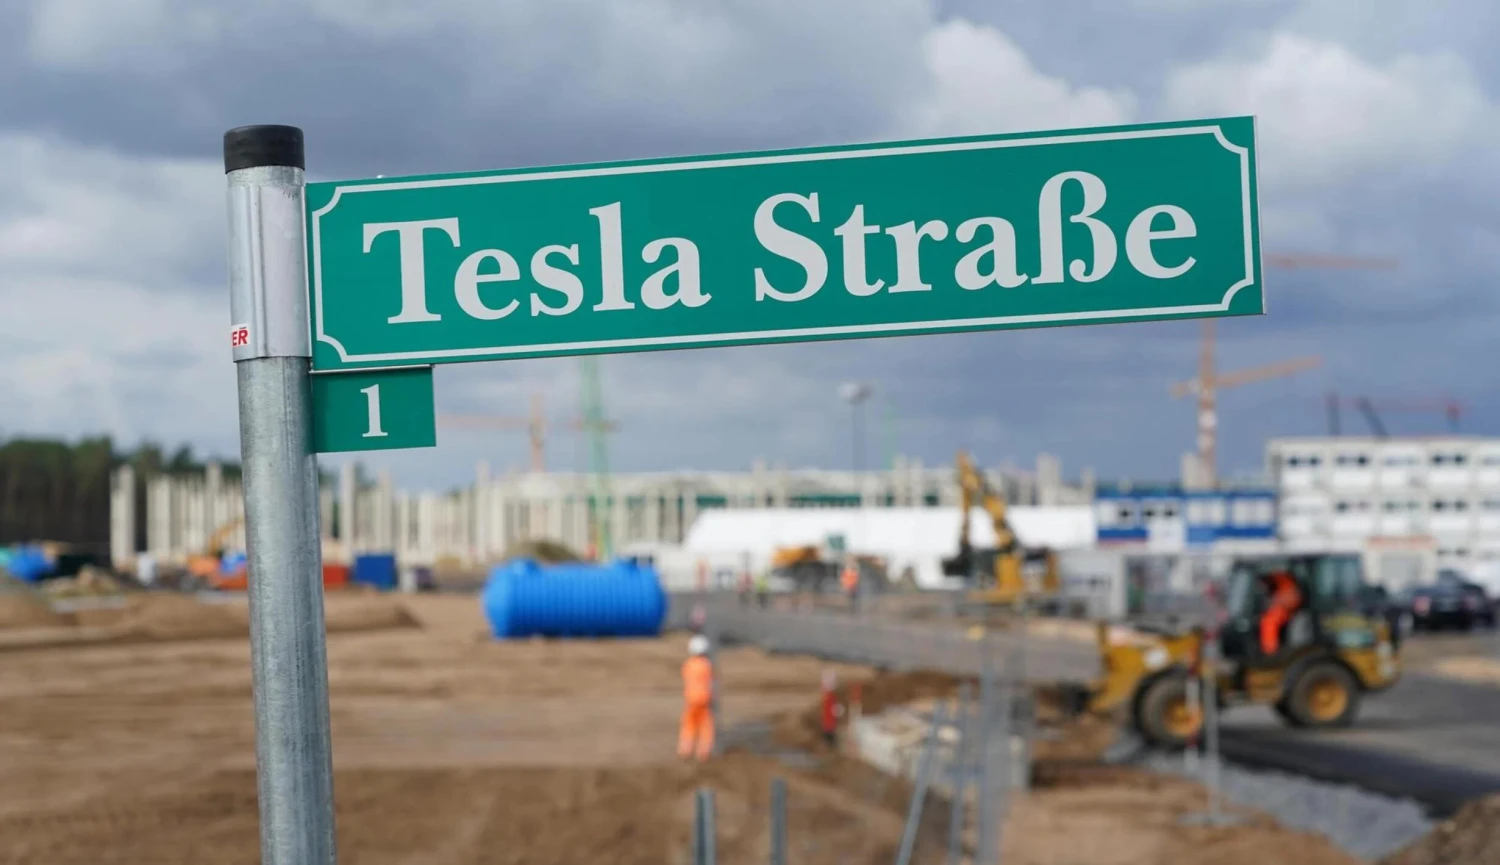 Součástky opět dostupné. Tesla hodlá plně obnovit výrobu v německé továrně